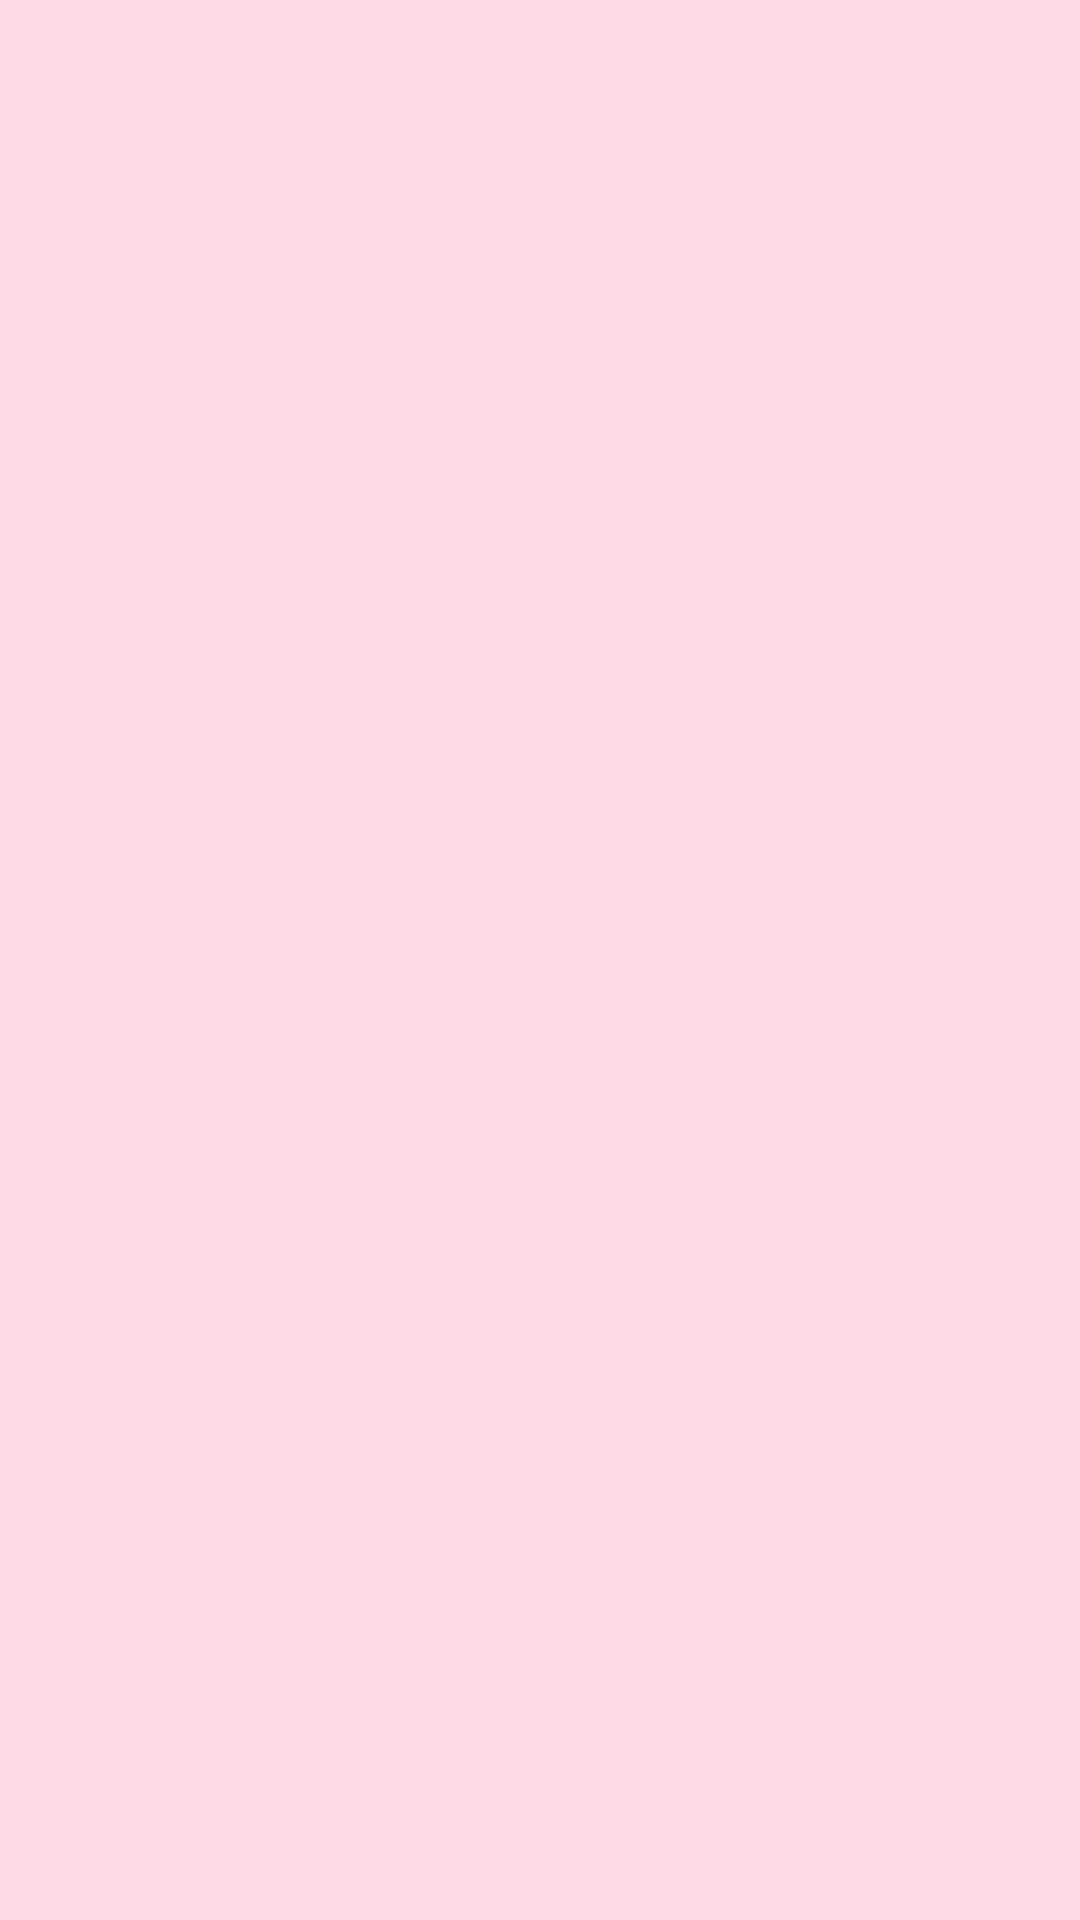 Unaimagen Minimalista Con Una Simple Adición De Color Rosa. Fondo de pantalla